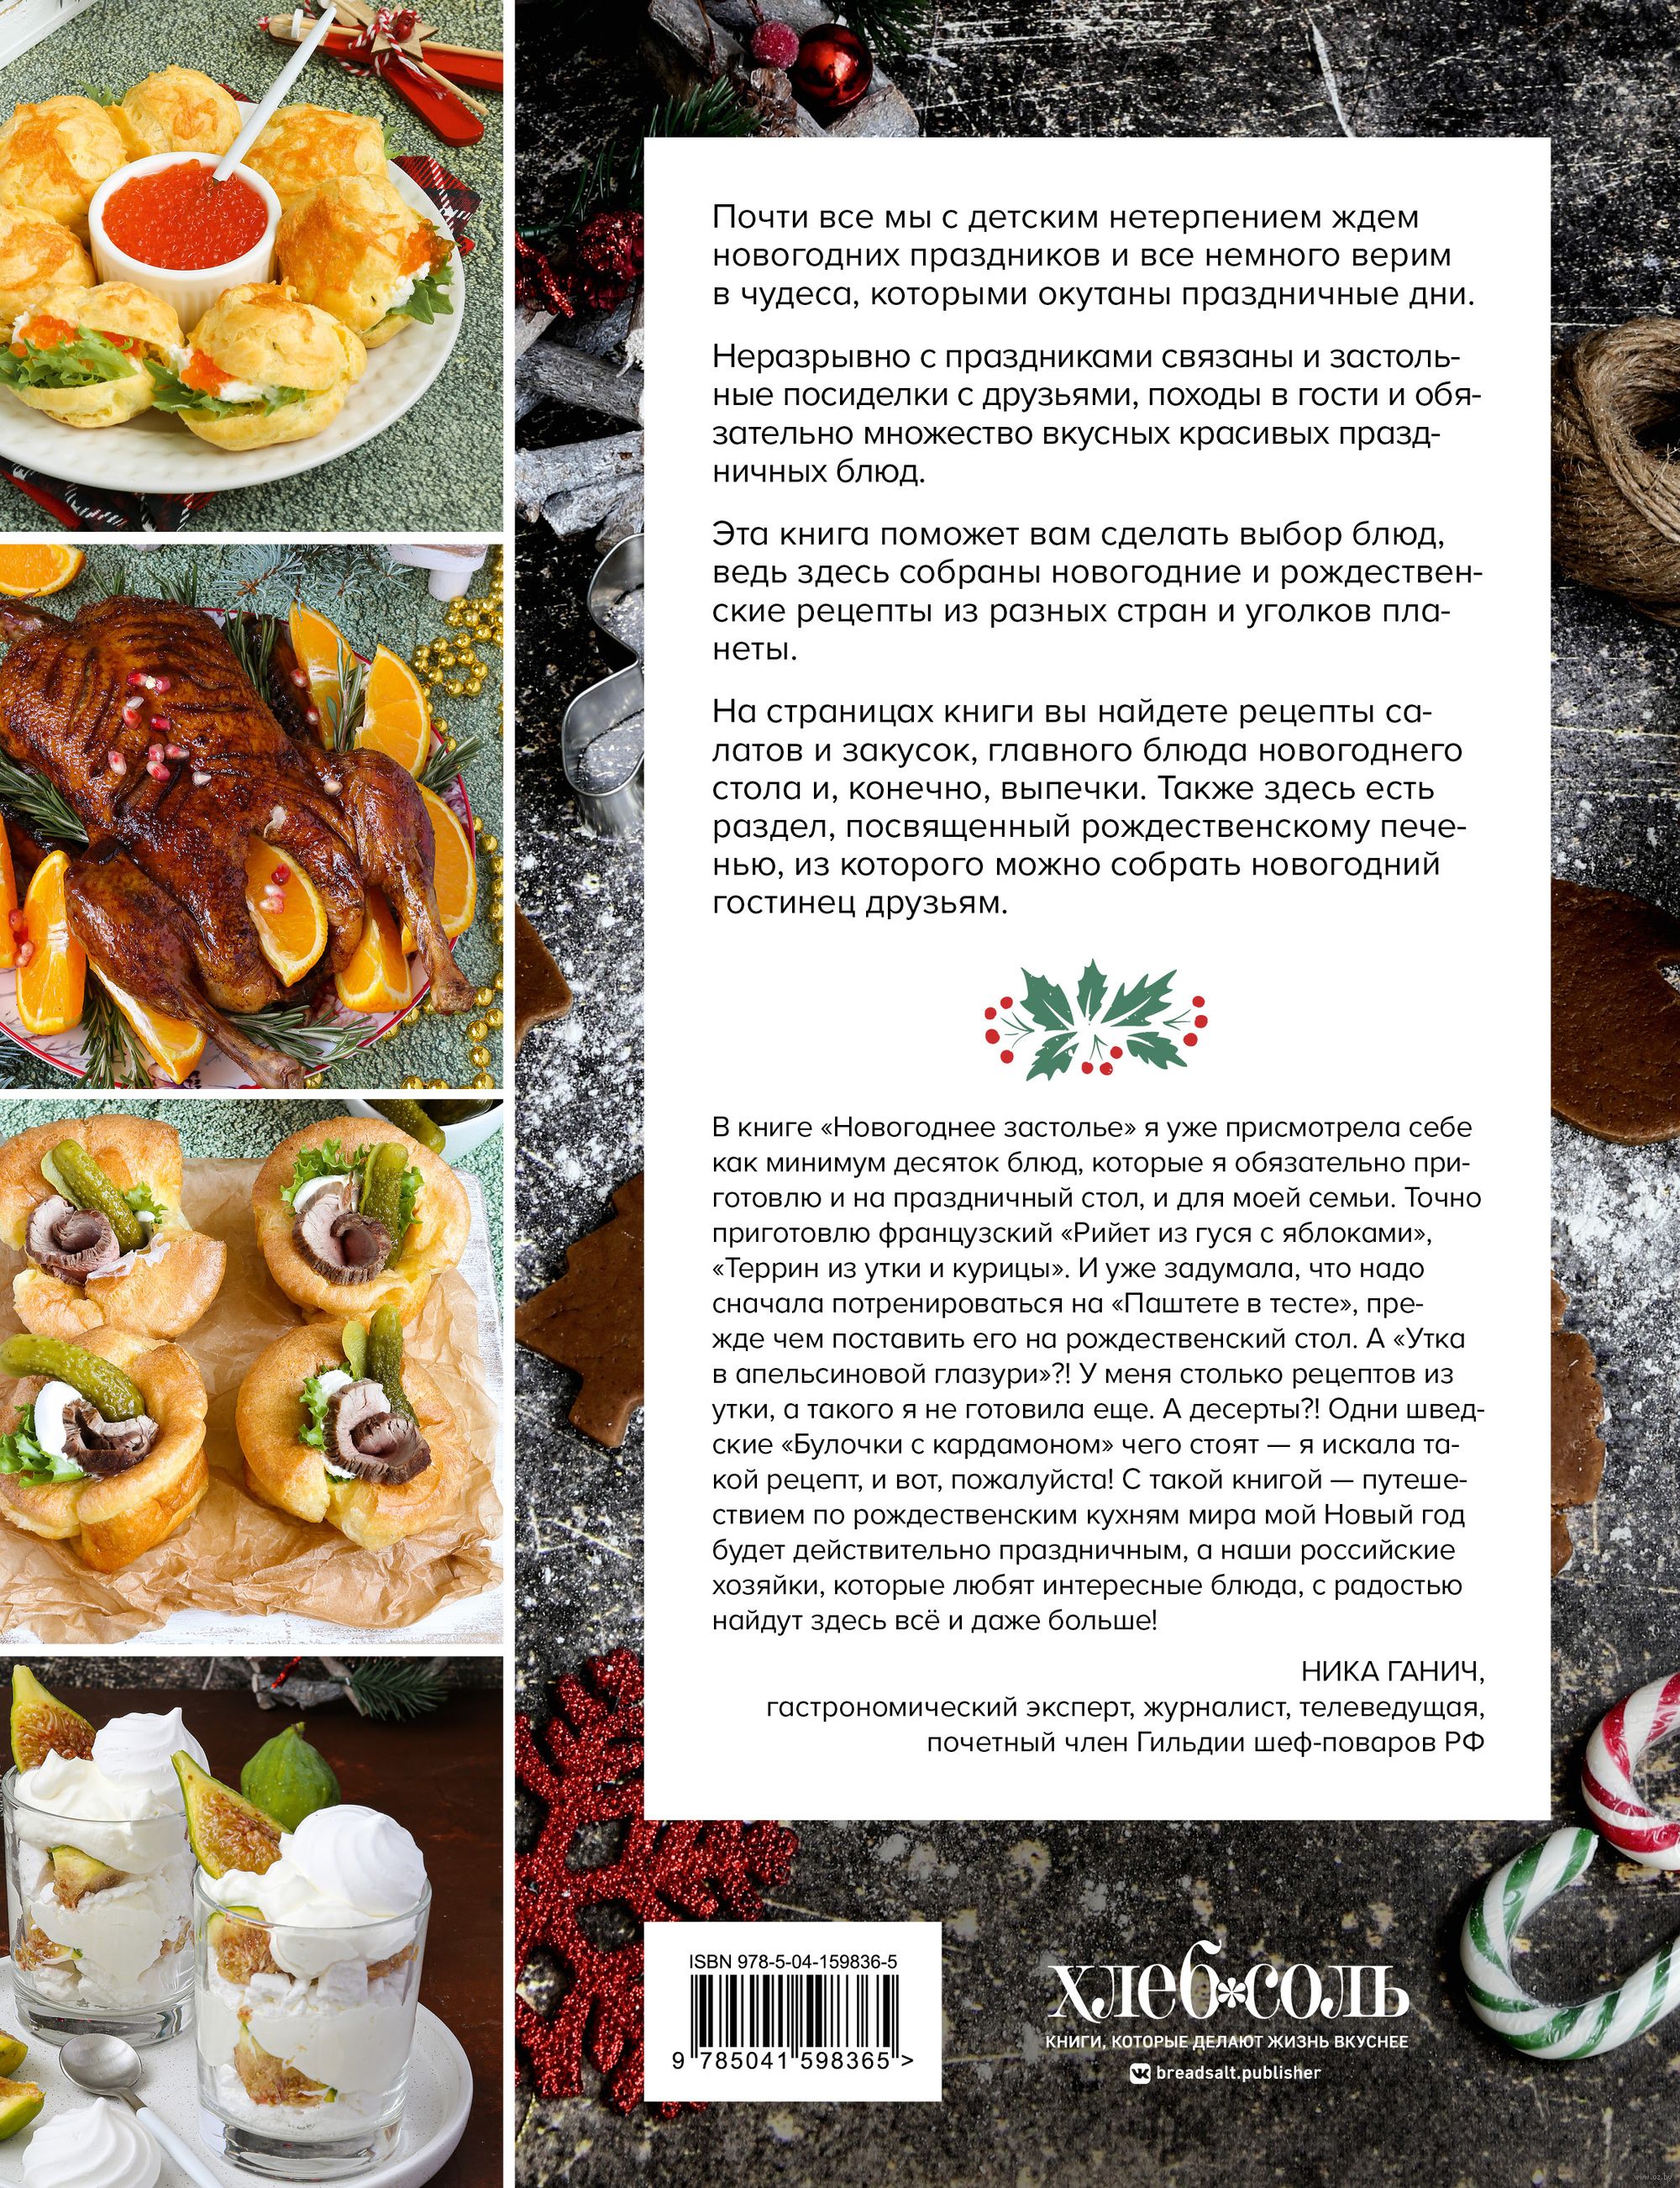 Красичкова Анастасия - Встречаем Новый год и Рождество: Лучшие рецепты для праздничного стола